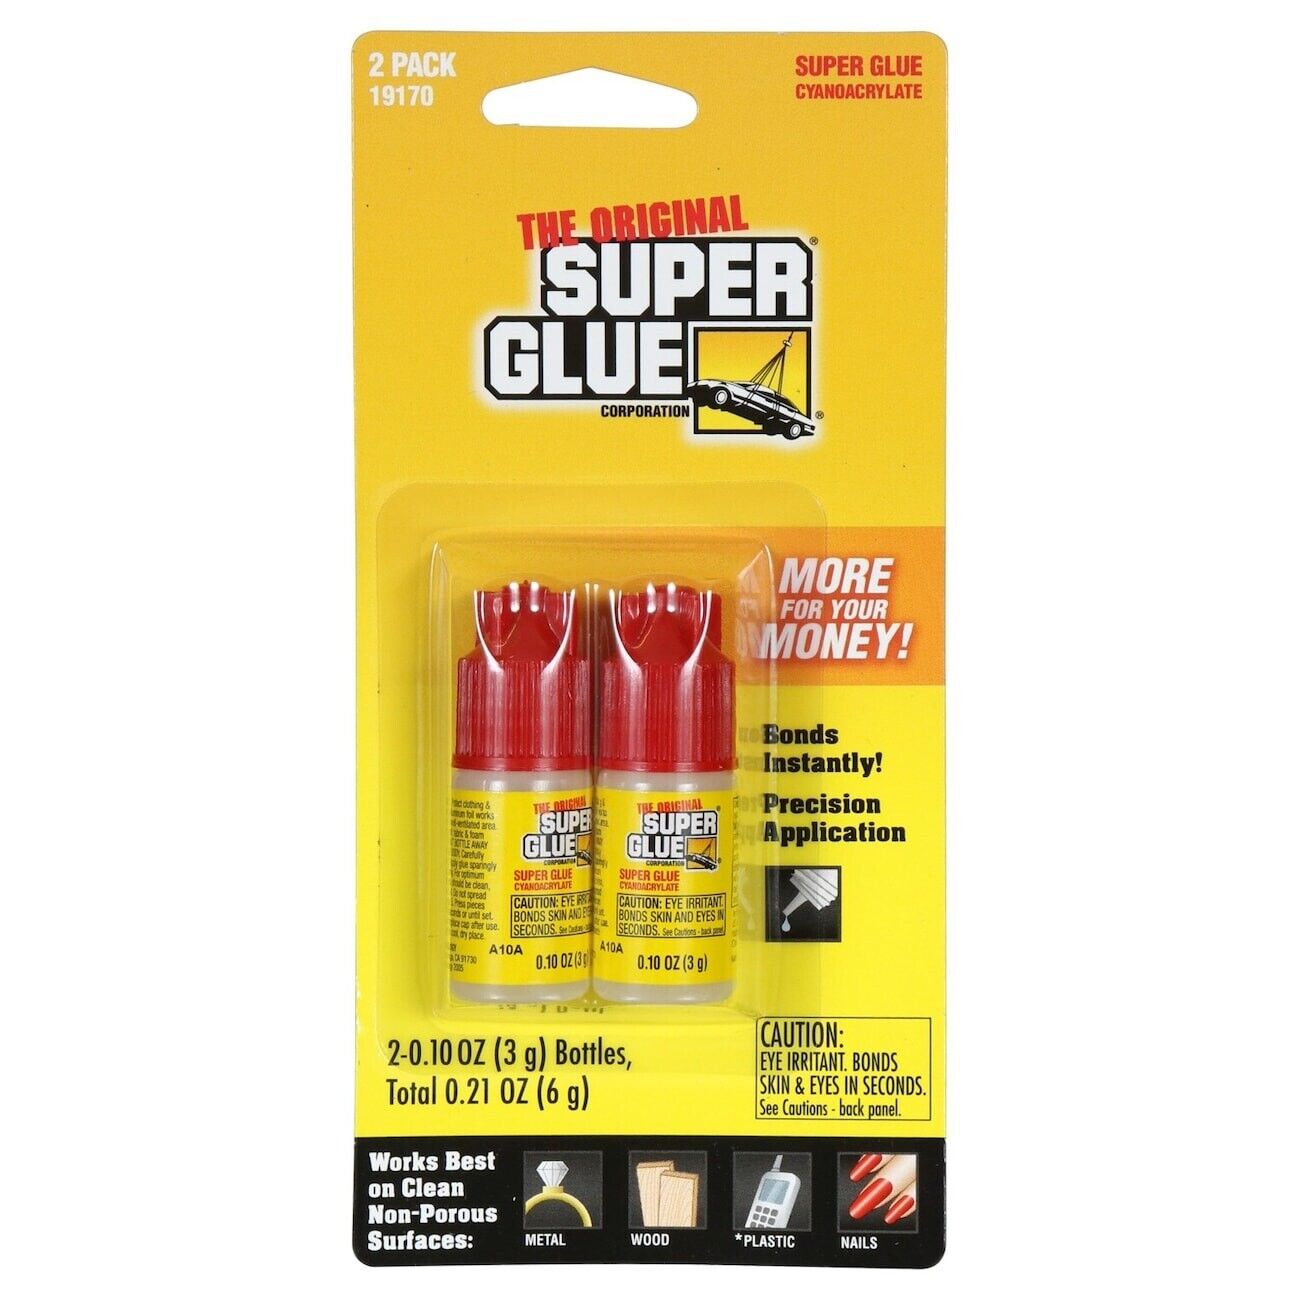 MULTI USE SUPER GLUE - The Original - 2 Pack...